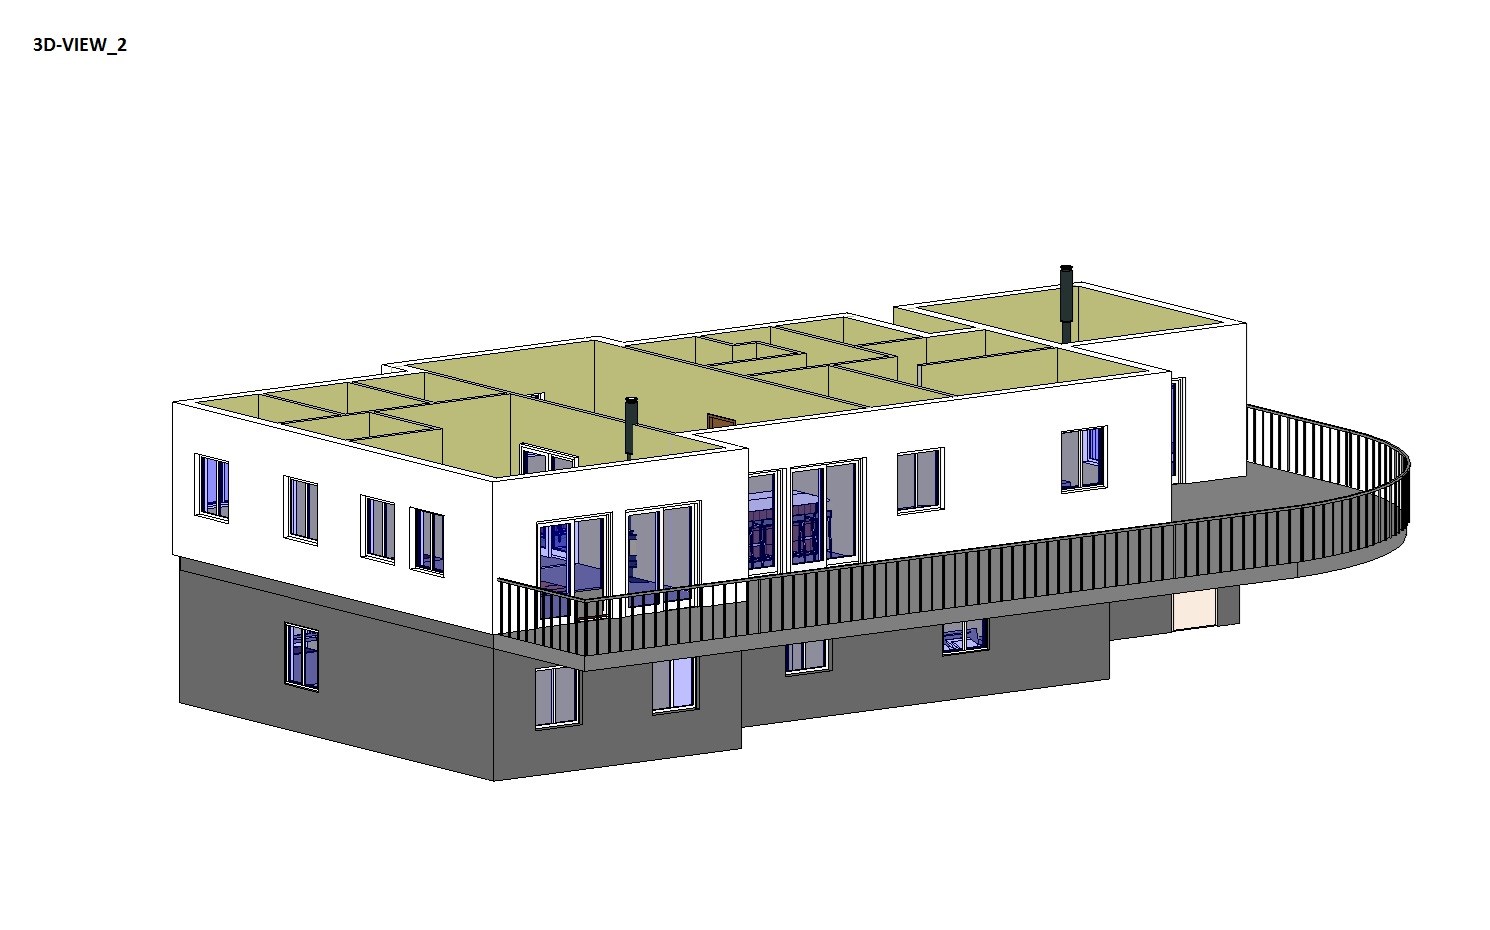 Hvordan ville DU løst takeutforming på dette huset (og fasade/materialvalg)? - 3D-VIEW_2.jpg - Anonym